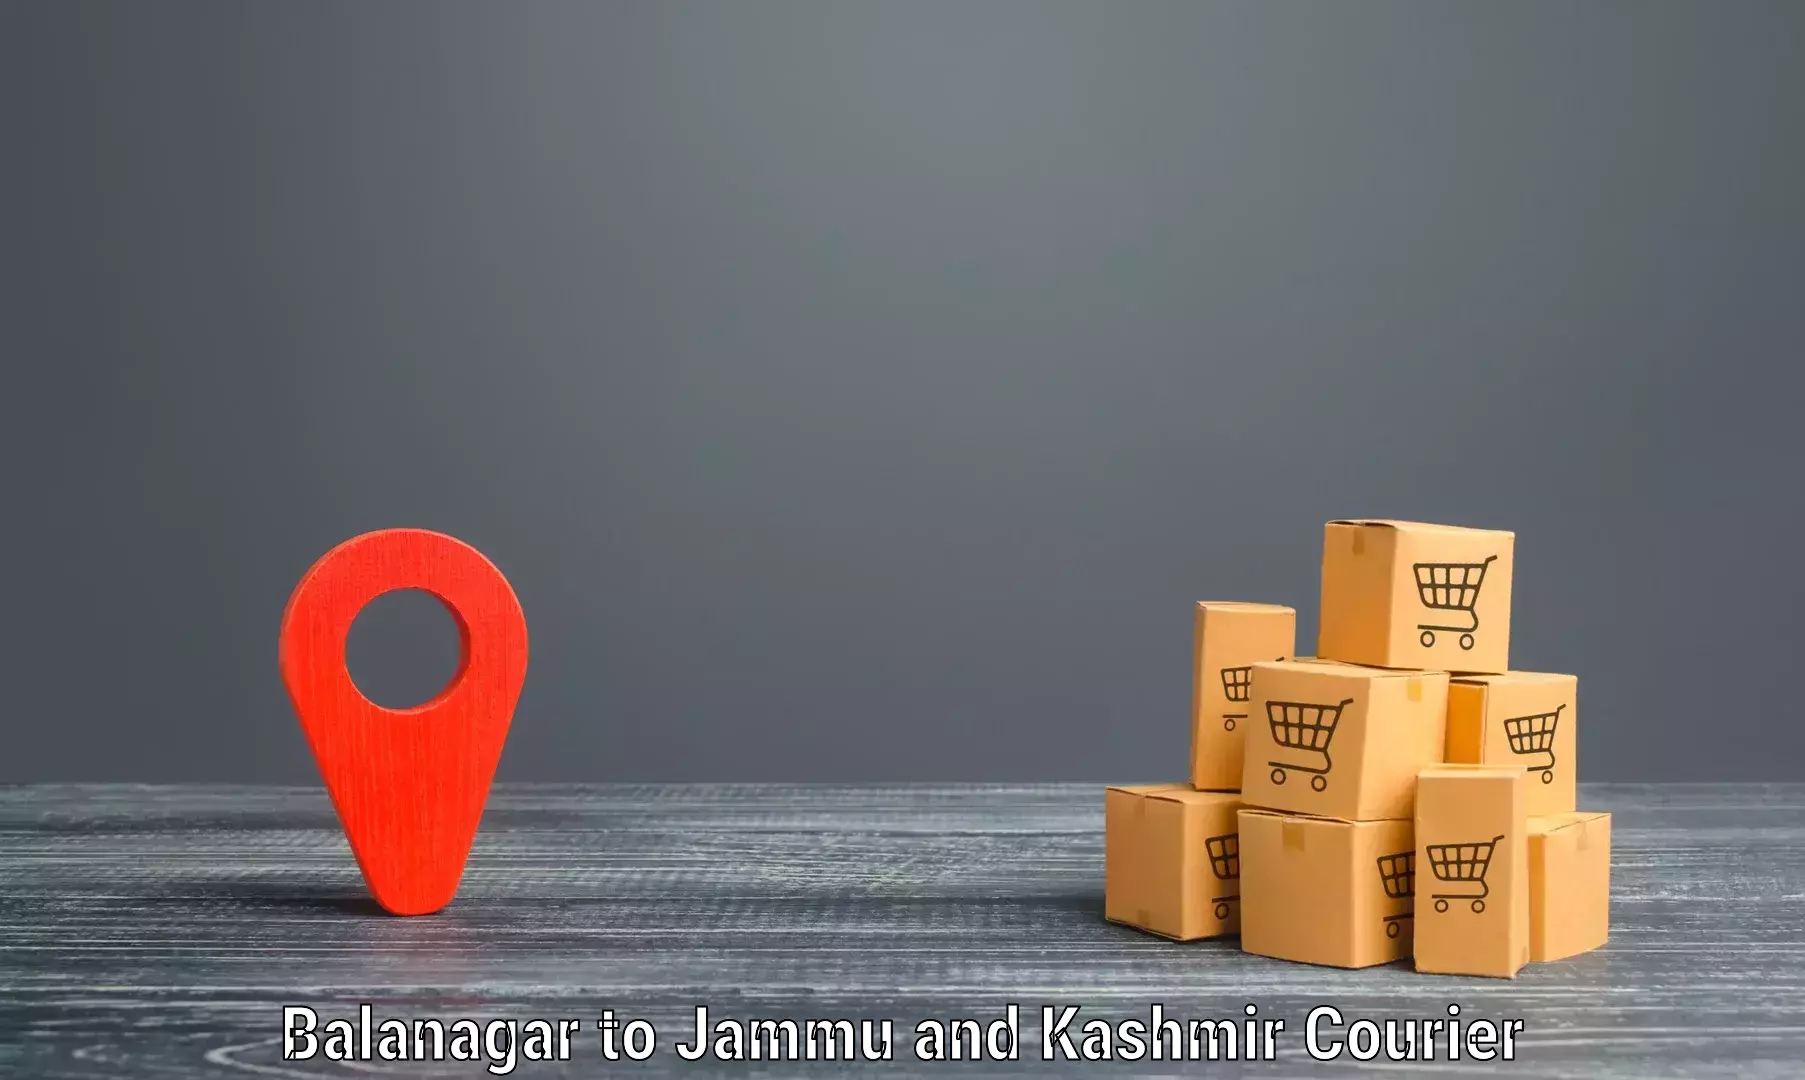 Remote area delivery in Balanagar to NIT Srinagar